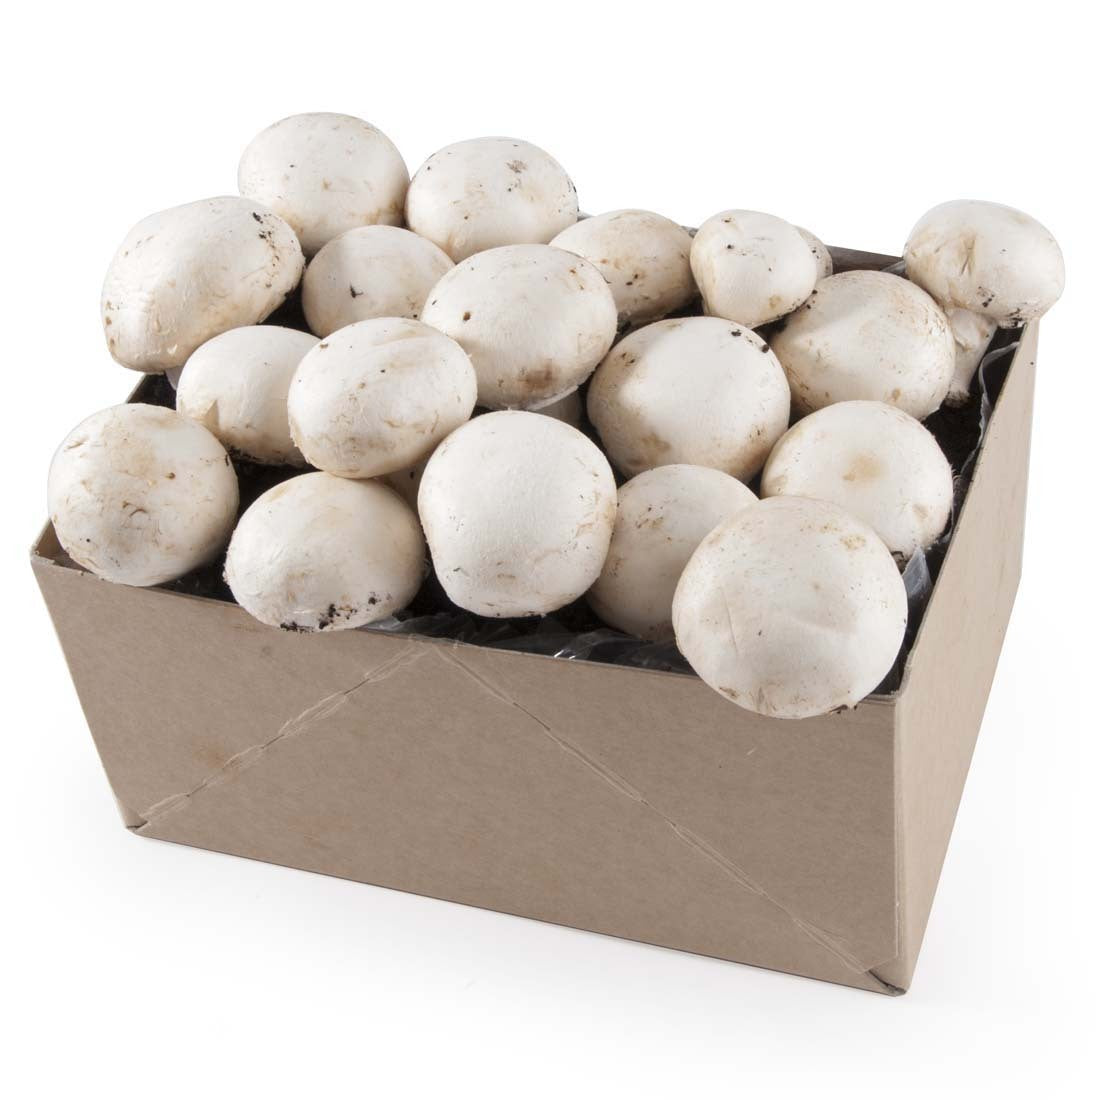 Kit de culture de champignons - Cultivez vos propres champignons bruns  Cremini dans votre cuisine